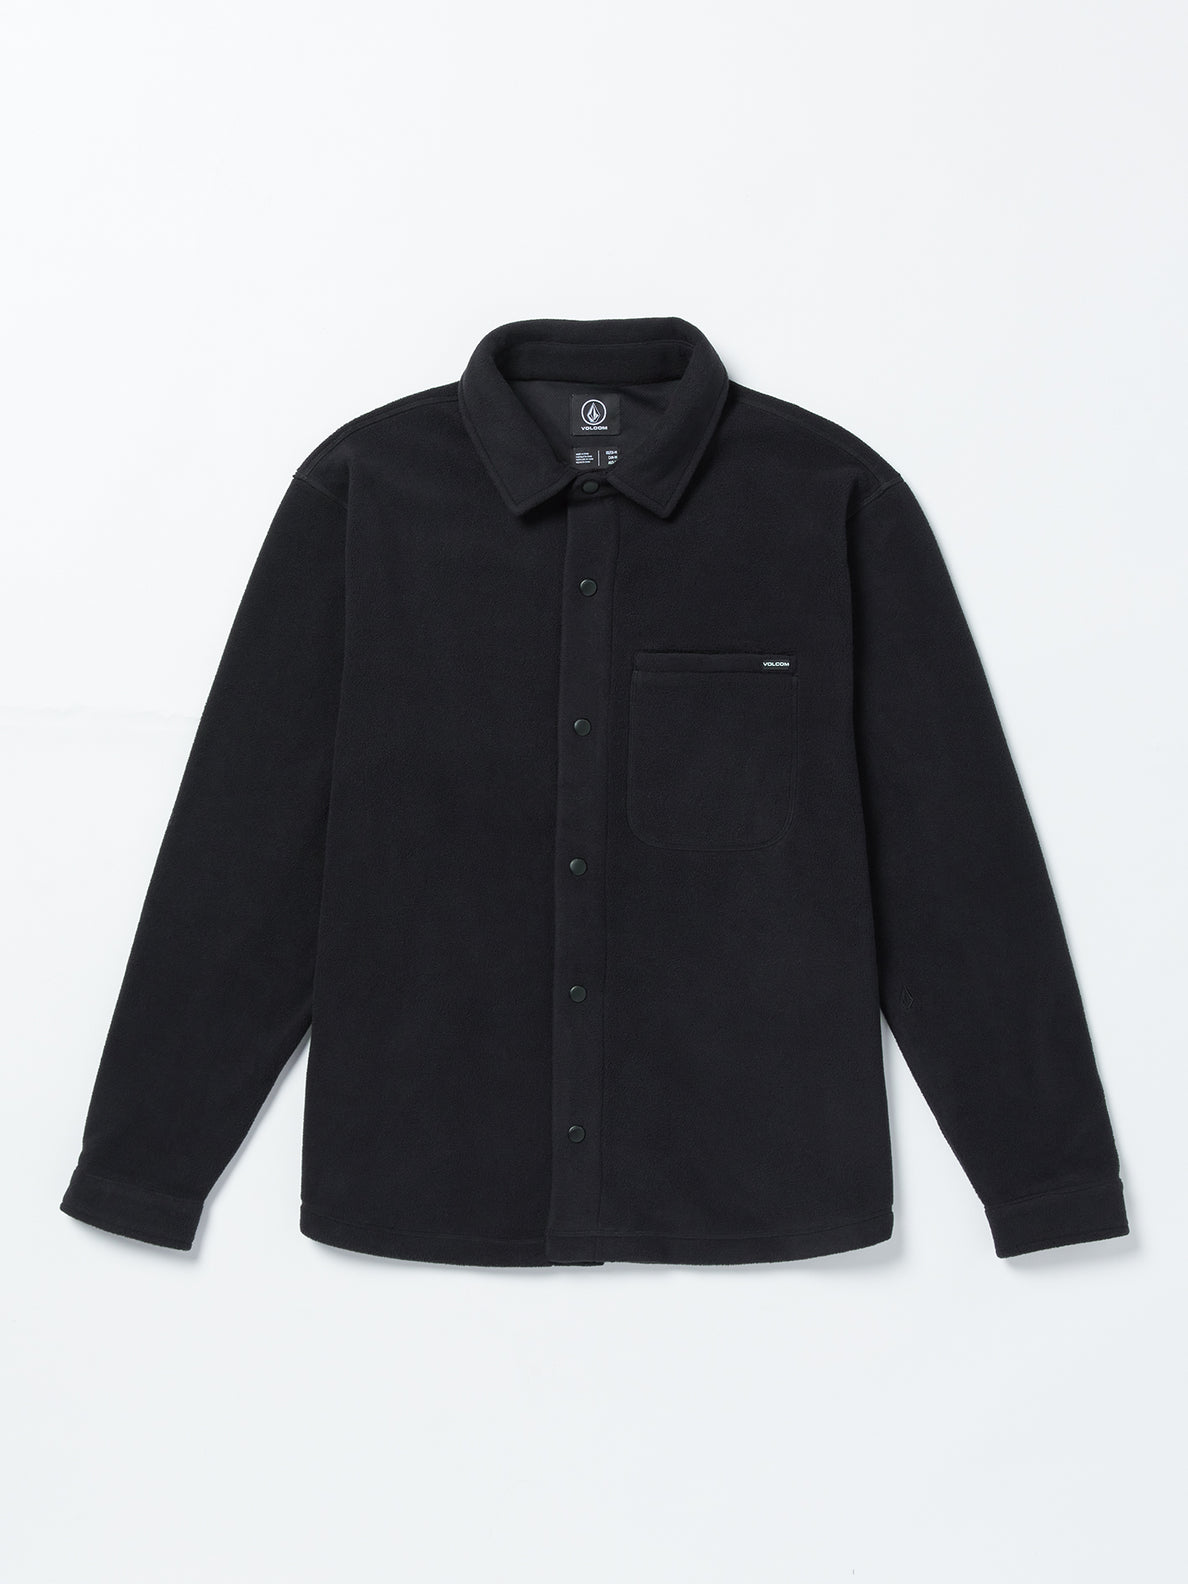 Bowered Light Long Sleeve Shirt - Black (A5832300_BLK) [F]